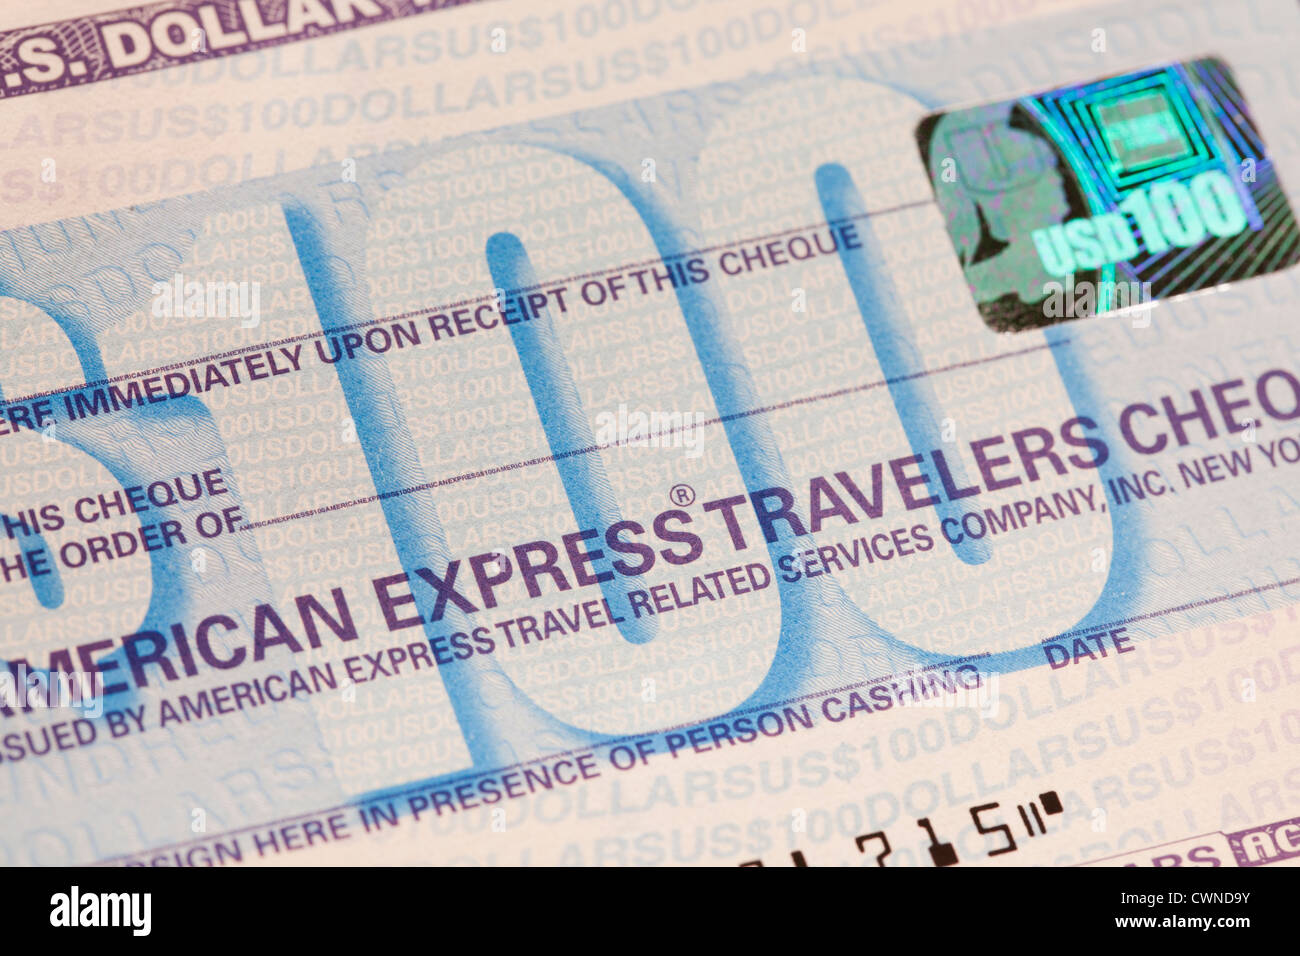 Travelers cheque Stock Photo